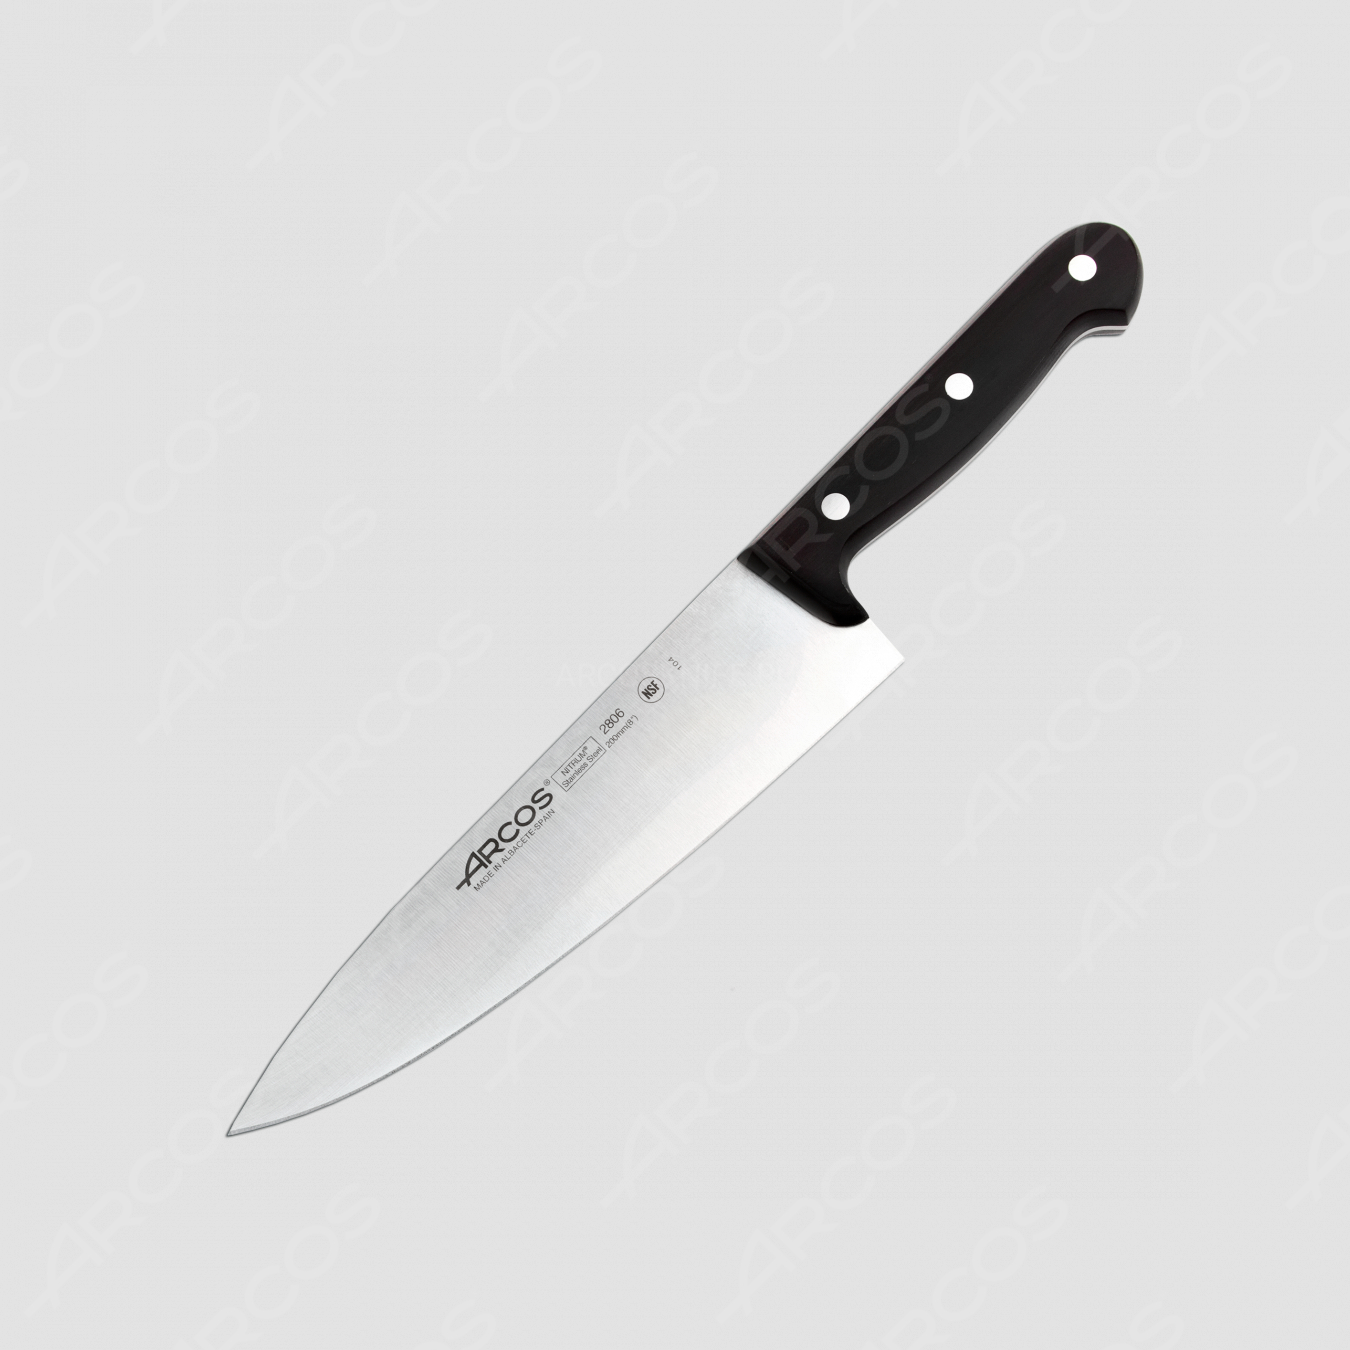 Профессиональный поварской кухонный нож 20 см, серия Universal, ARCOS, Испания